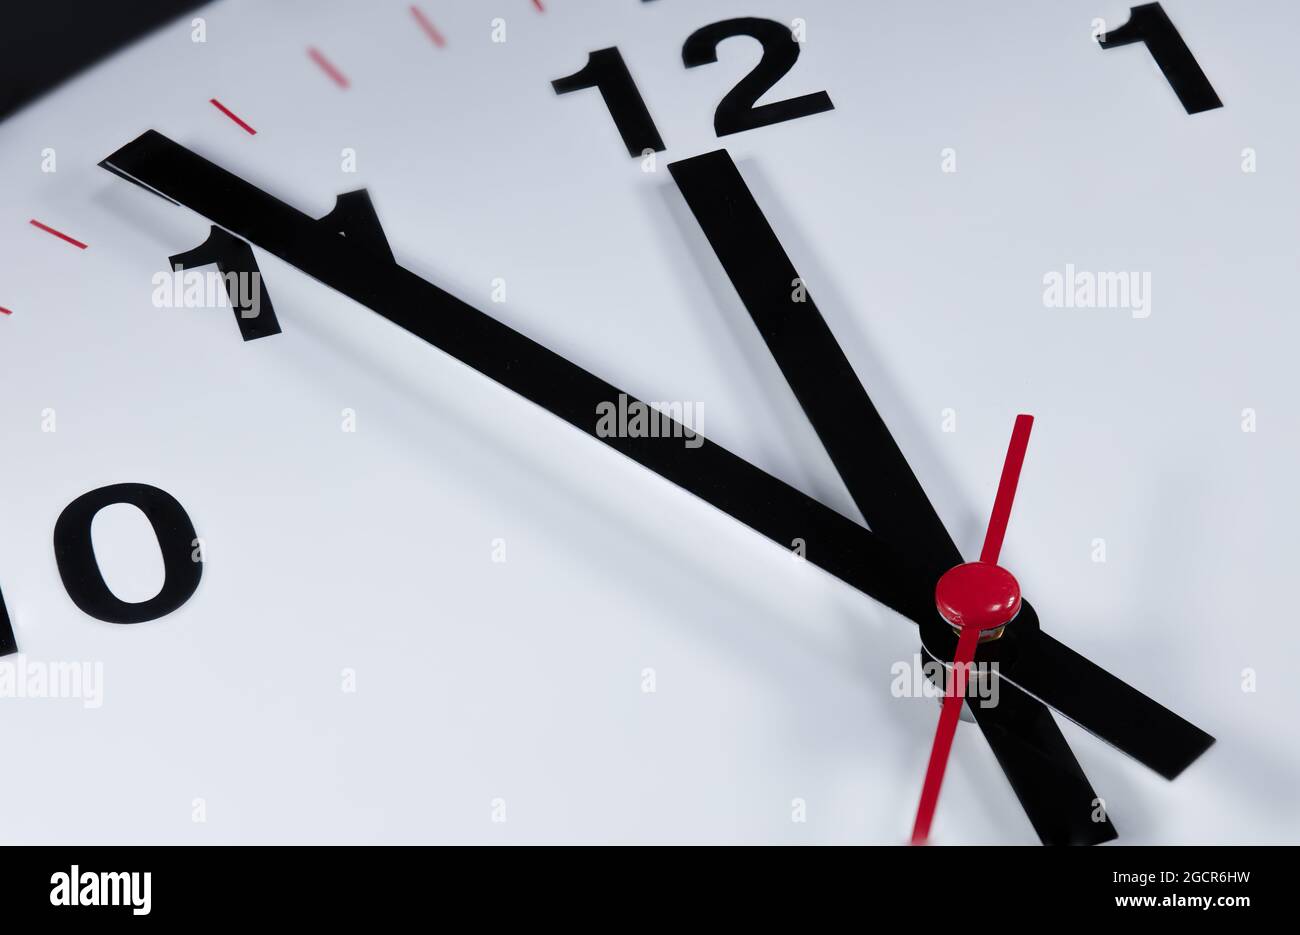 Es ist fünf bis zwölf, die Uhr tickt. Moderne Wanduhr zeigt die Zeit 5 vor 12 an. Nahaufnahme einer Wanduhr, mit fünf Minuten bis zwölf Uhr Stockfoto